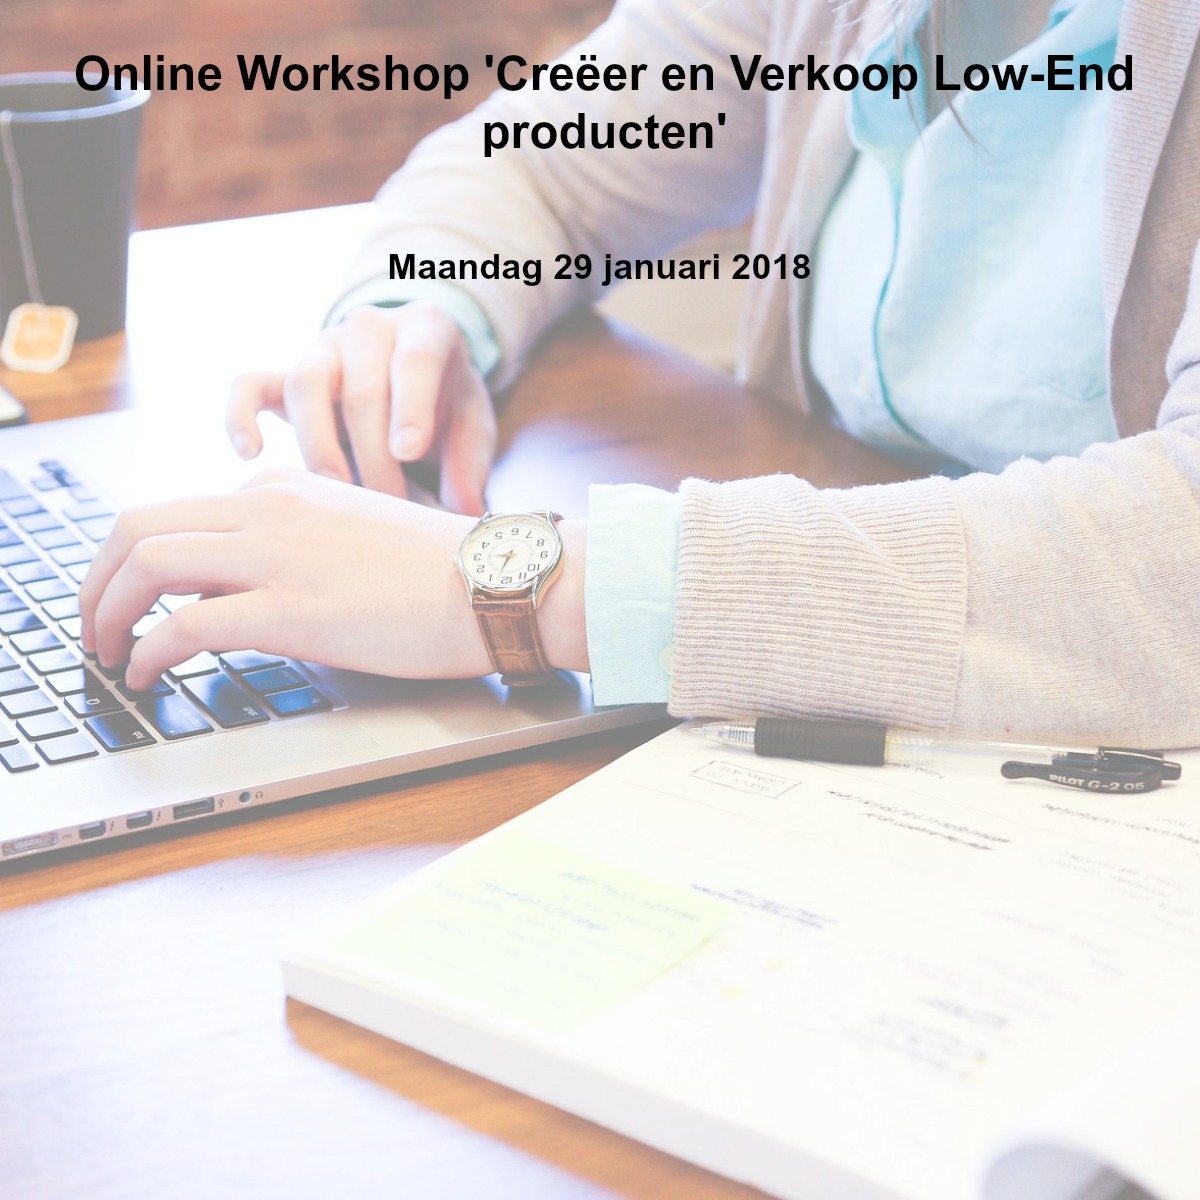 Online Workshop 'Creëer en Verkoop Low-End producten'